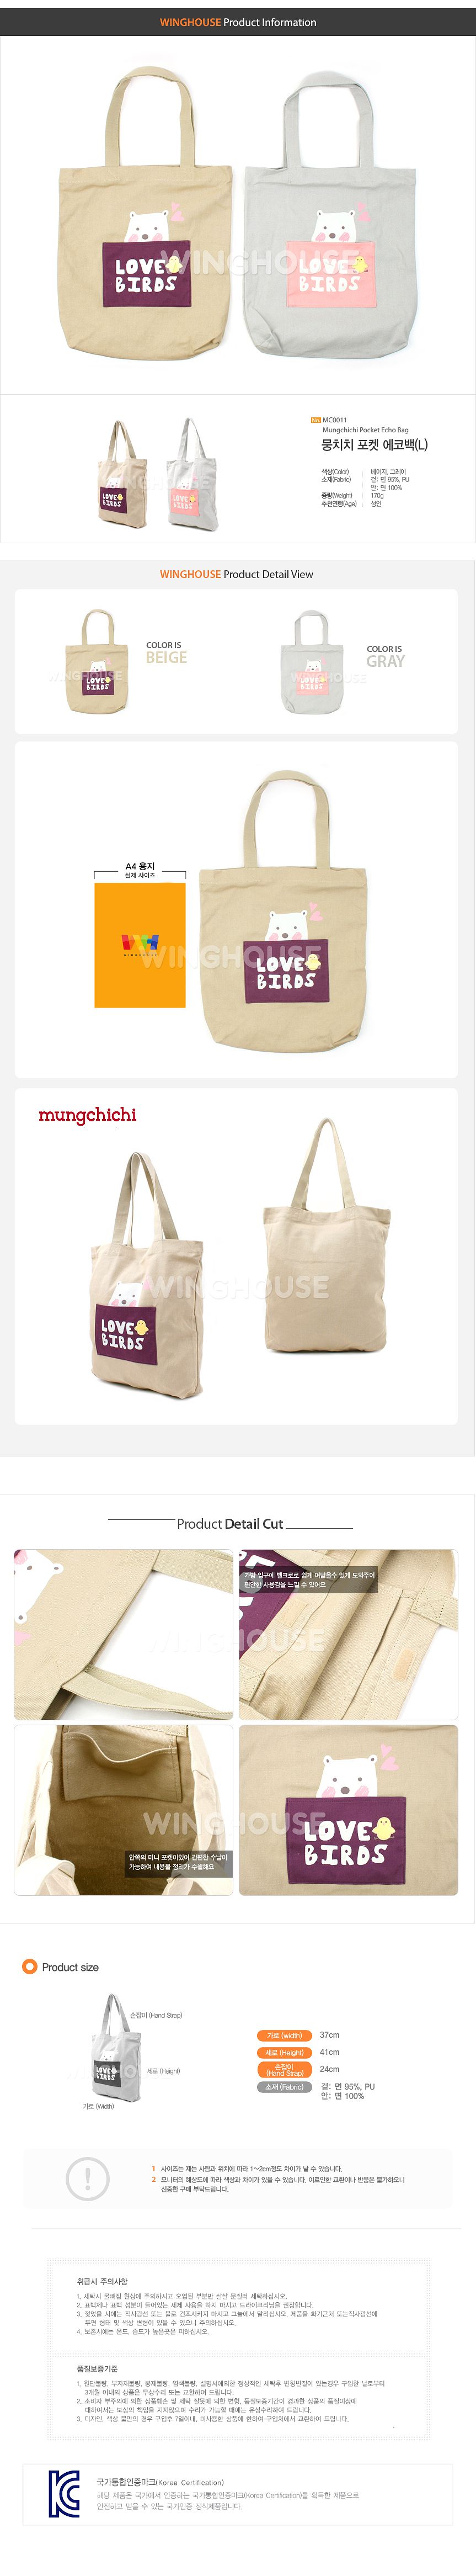  ★特價★韓國品牌Mungchichi-設計款提袋【MC0011】-L